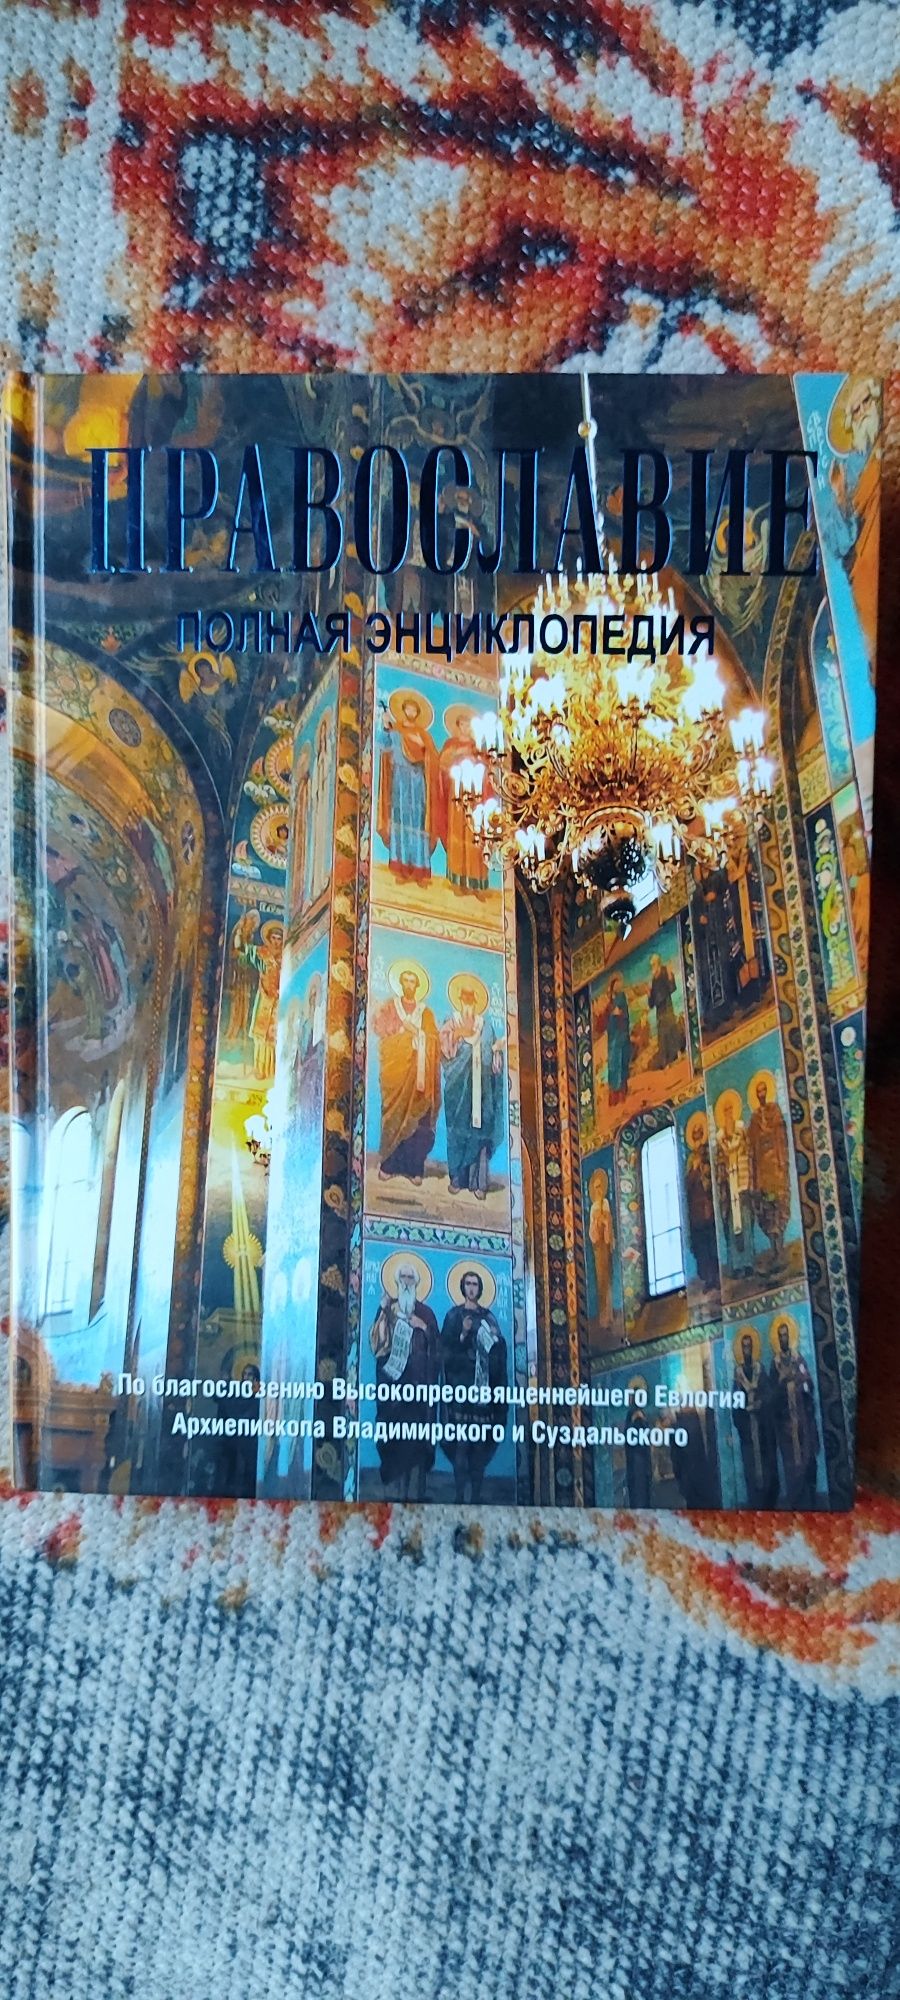 Православие полная энциклопедия